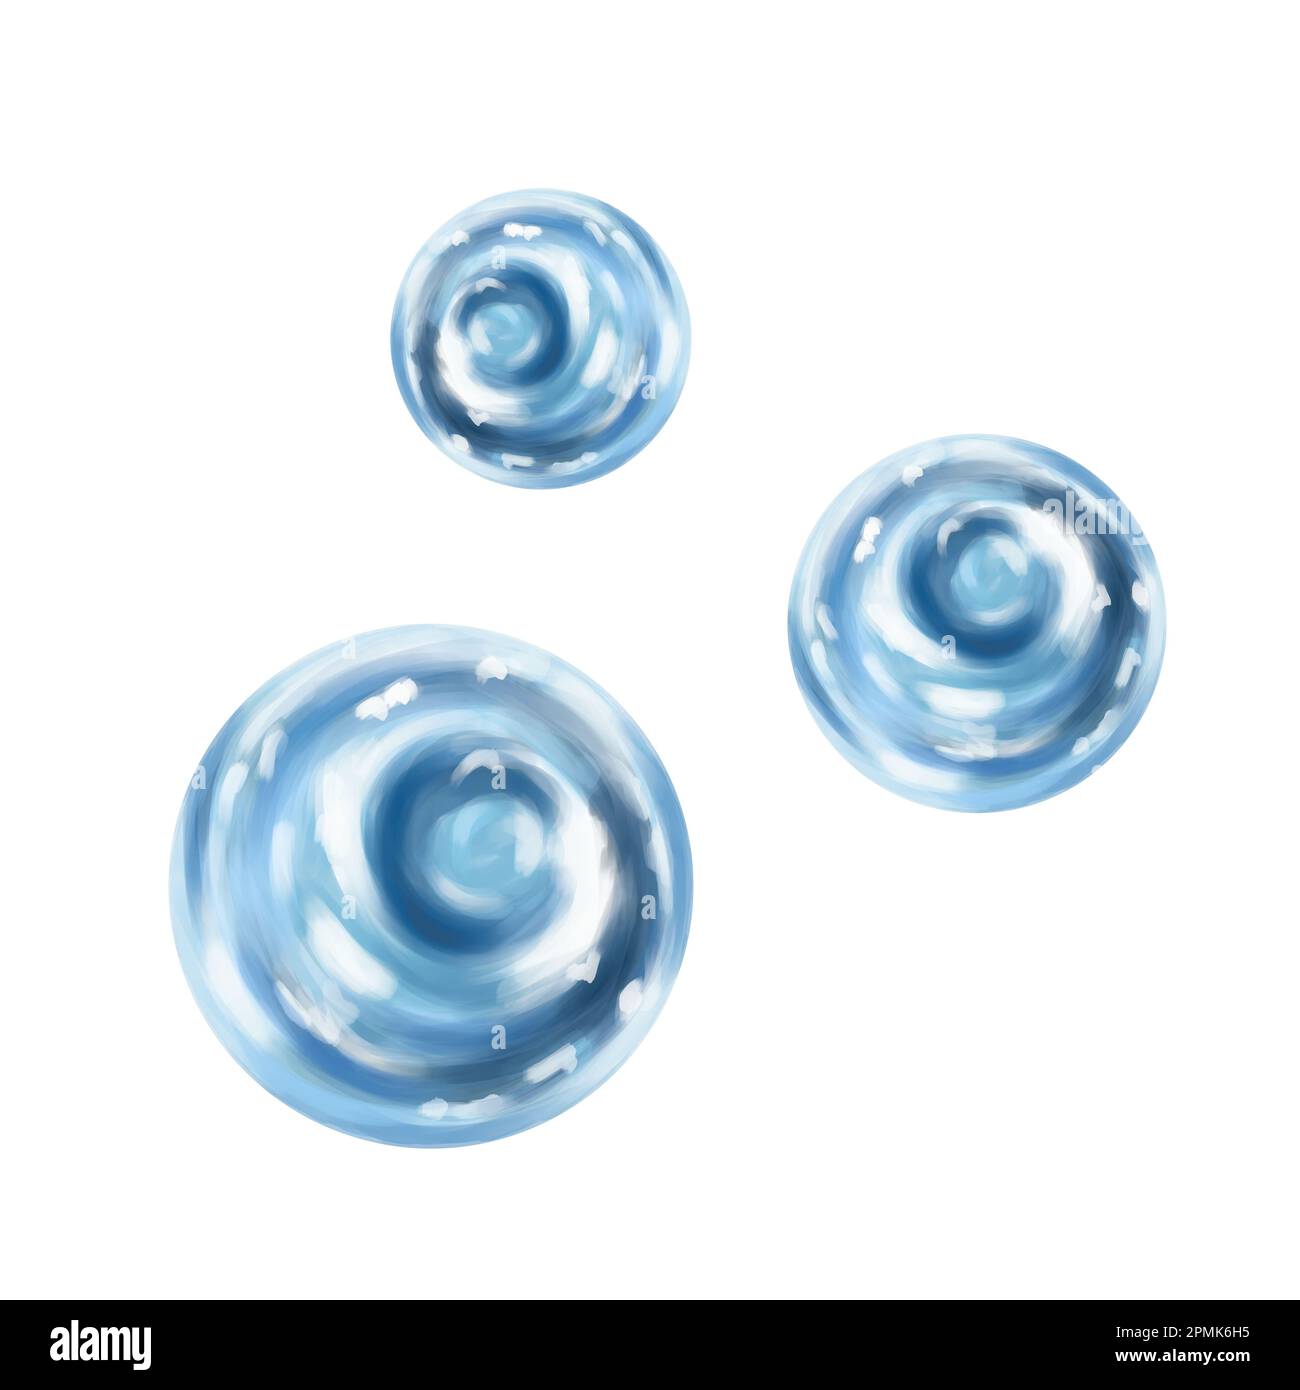 Composition de bulles d'eau rondes transparentes et réalistes sur fond blanc. Gouttes d'eau de mer, aquarium, océan, faune. Illustrateur numérique Banque D'Images